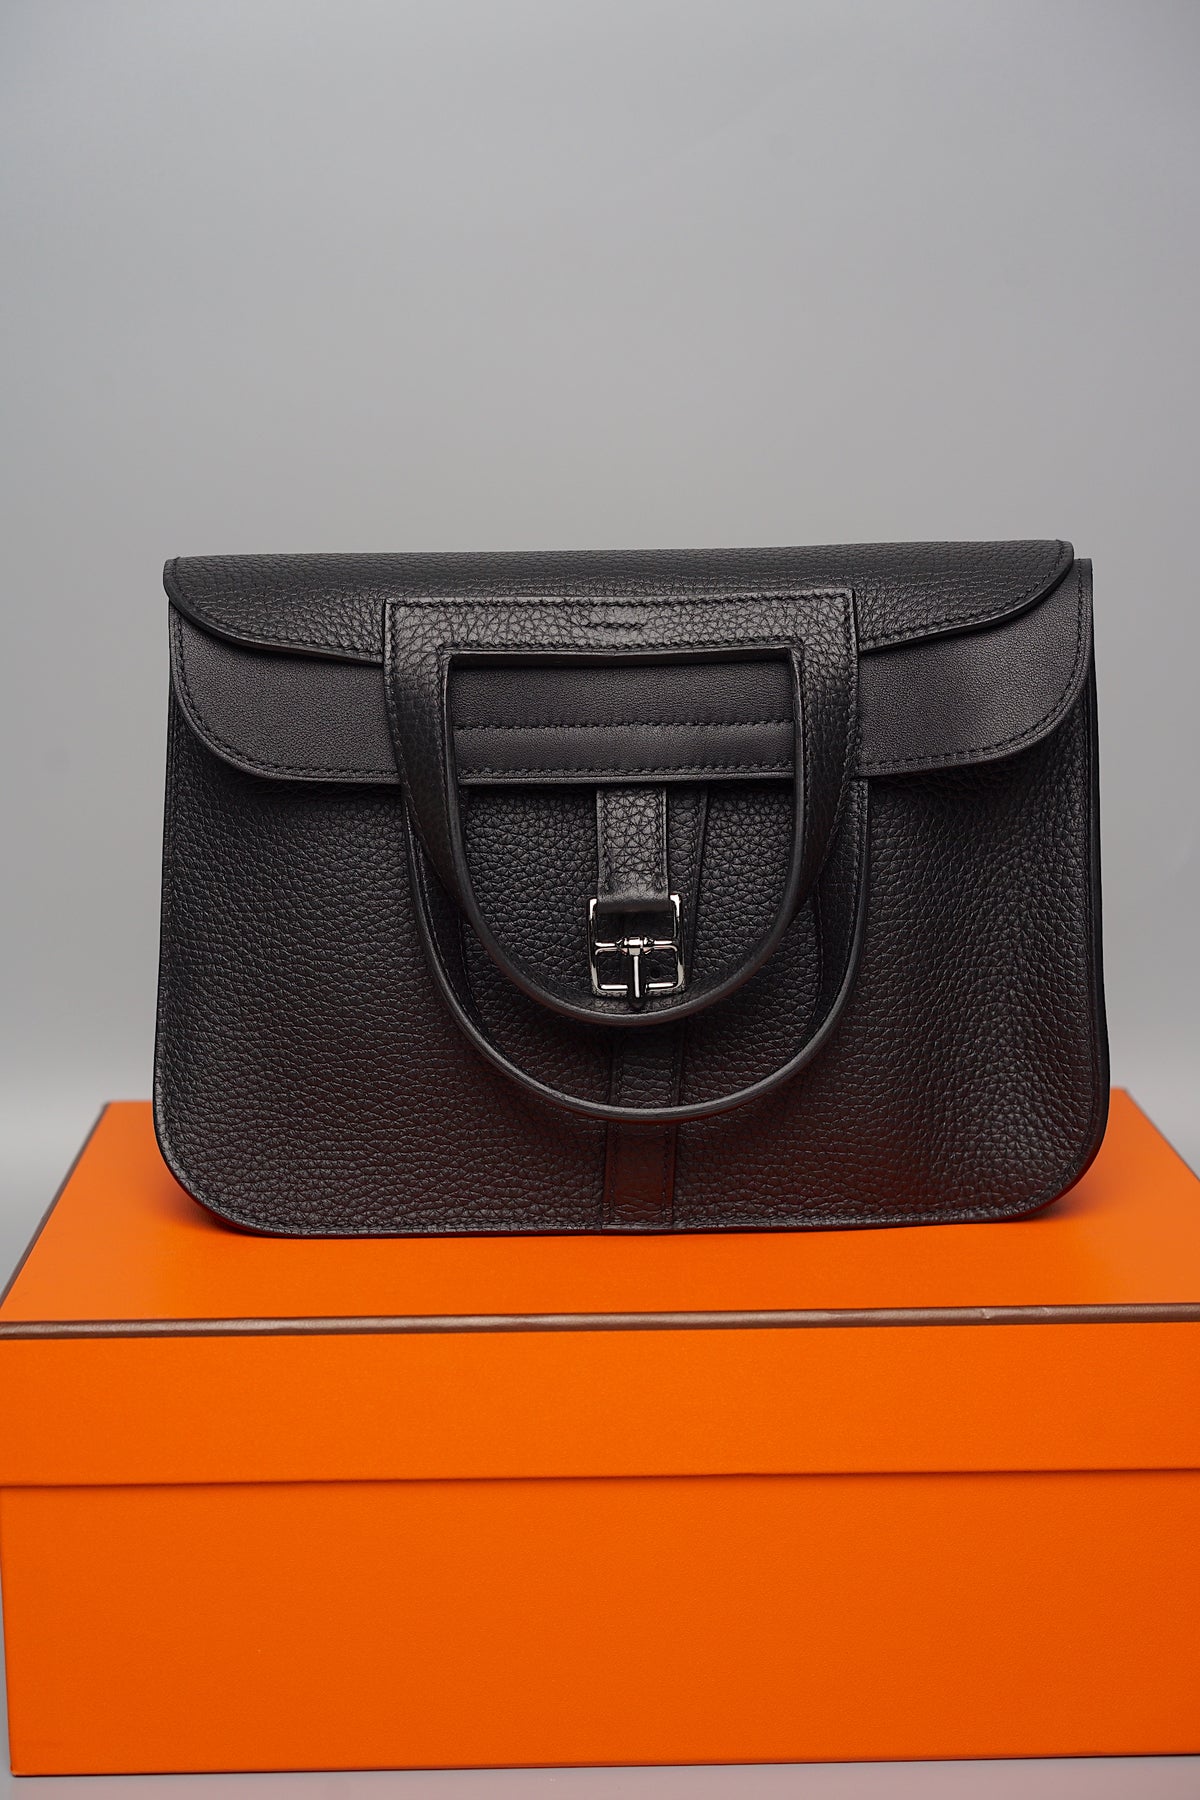 Hermes Halzan 25 in Black Phw (Brand New)– orangeporter